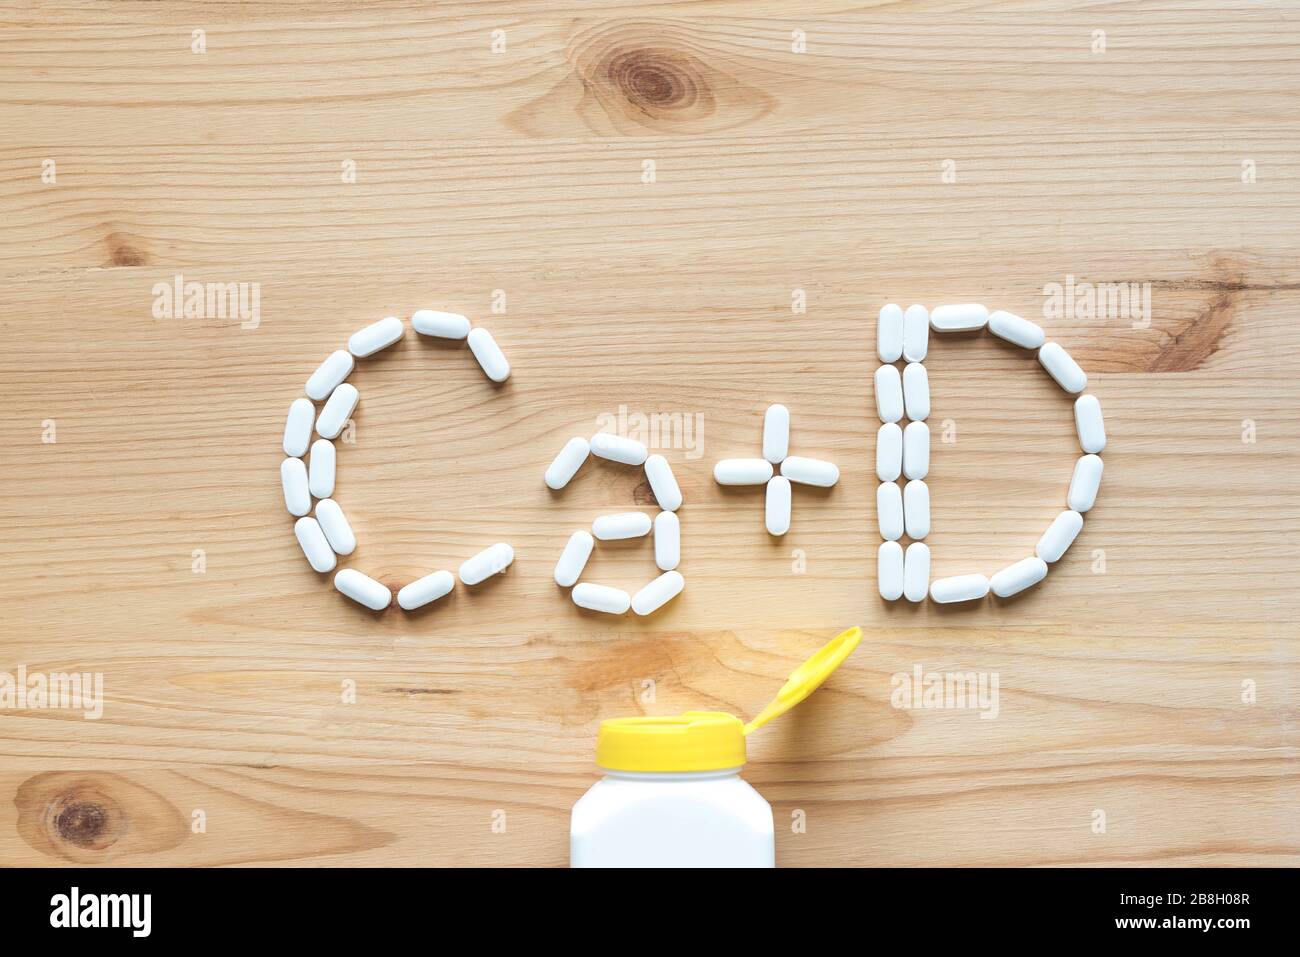 Kalzium und Vitamin D Generische Tabletten. Weiße Pillen, die Form des CA+D-Alphabets auf Holzhintergrund bilden, Kopierbereich, Draufsicht. Stockfoto